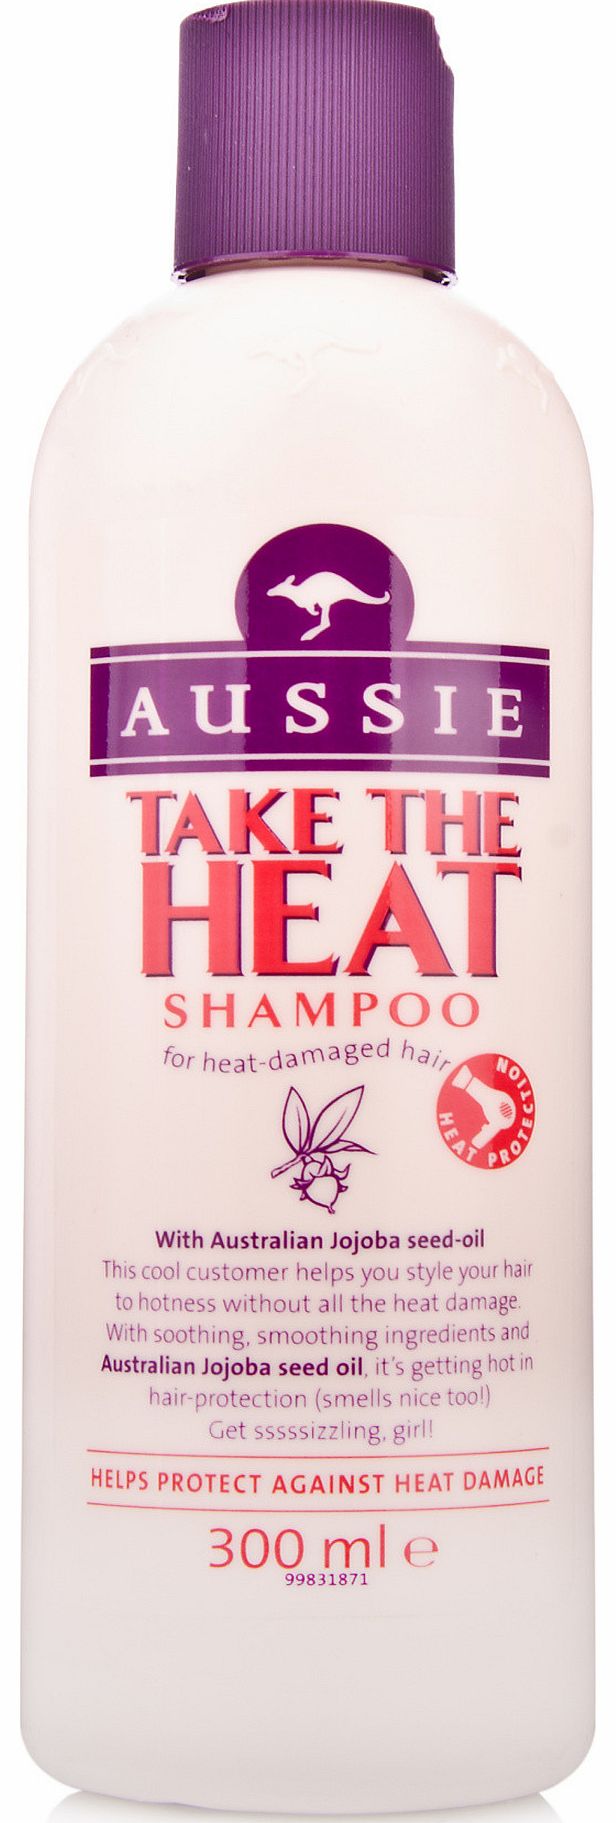 Take The Heat Shampoo